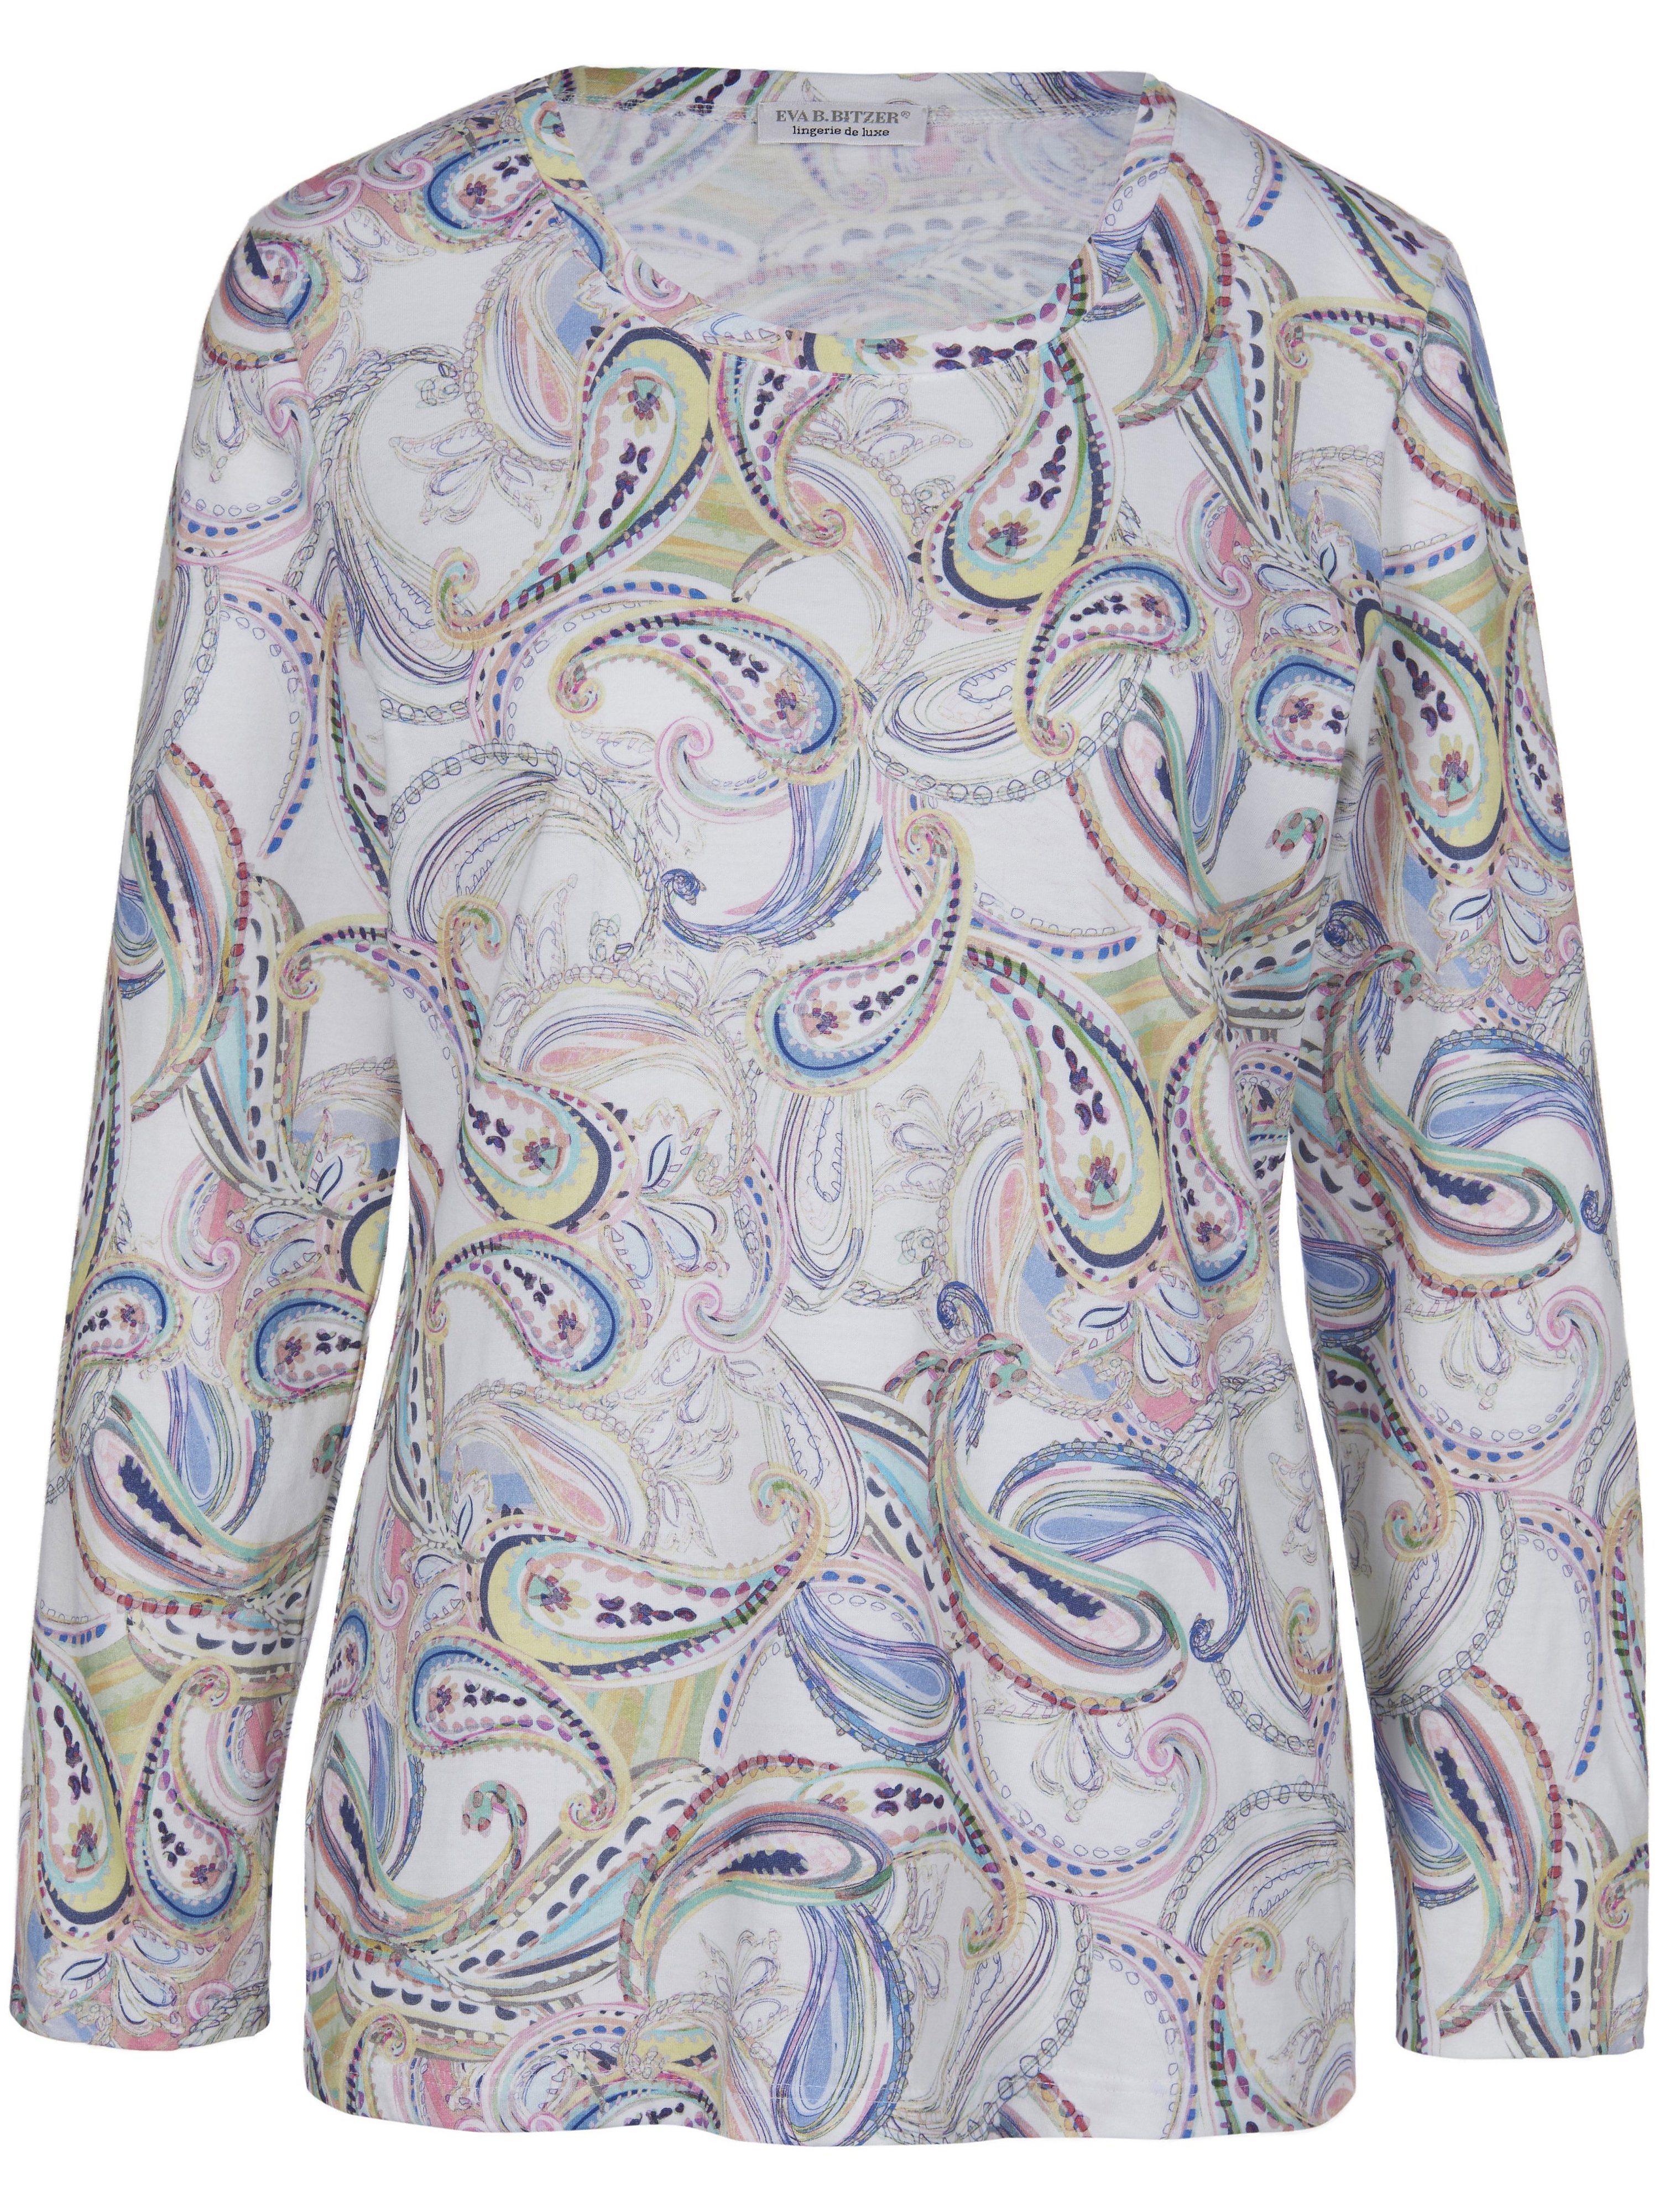 Le pyjama en single jersey  Eva B. Bitzer multicolore